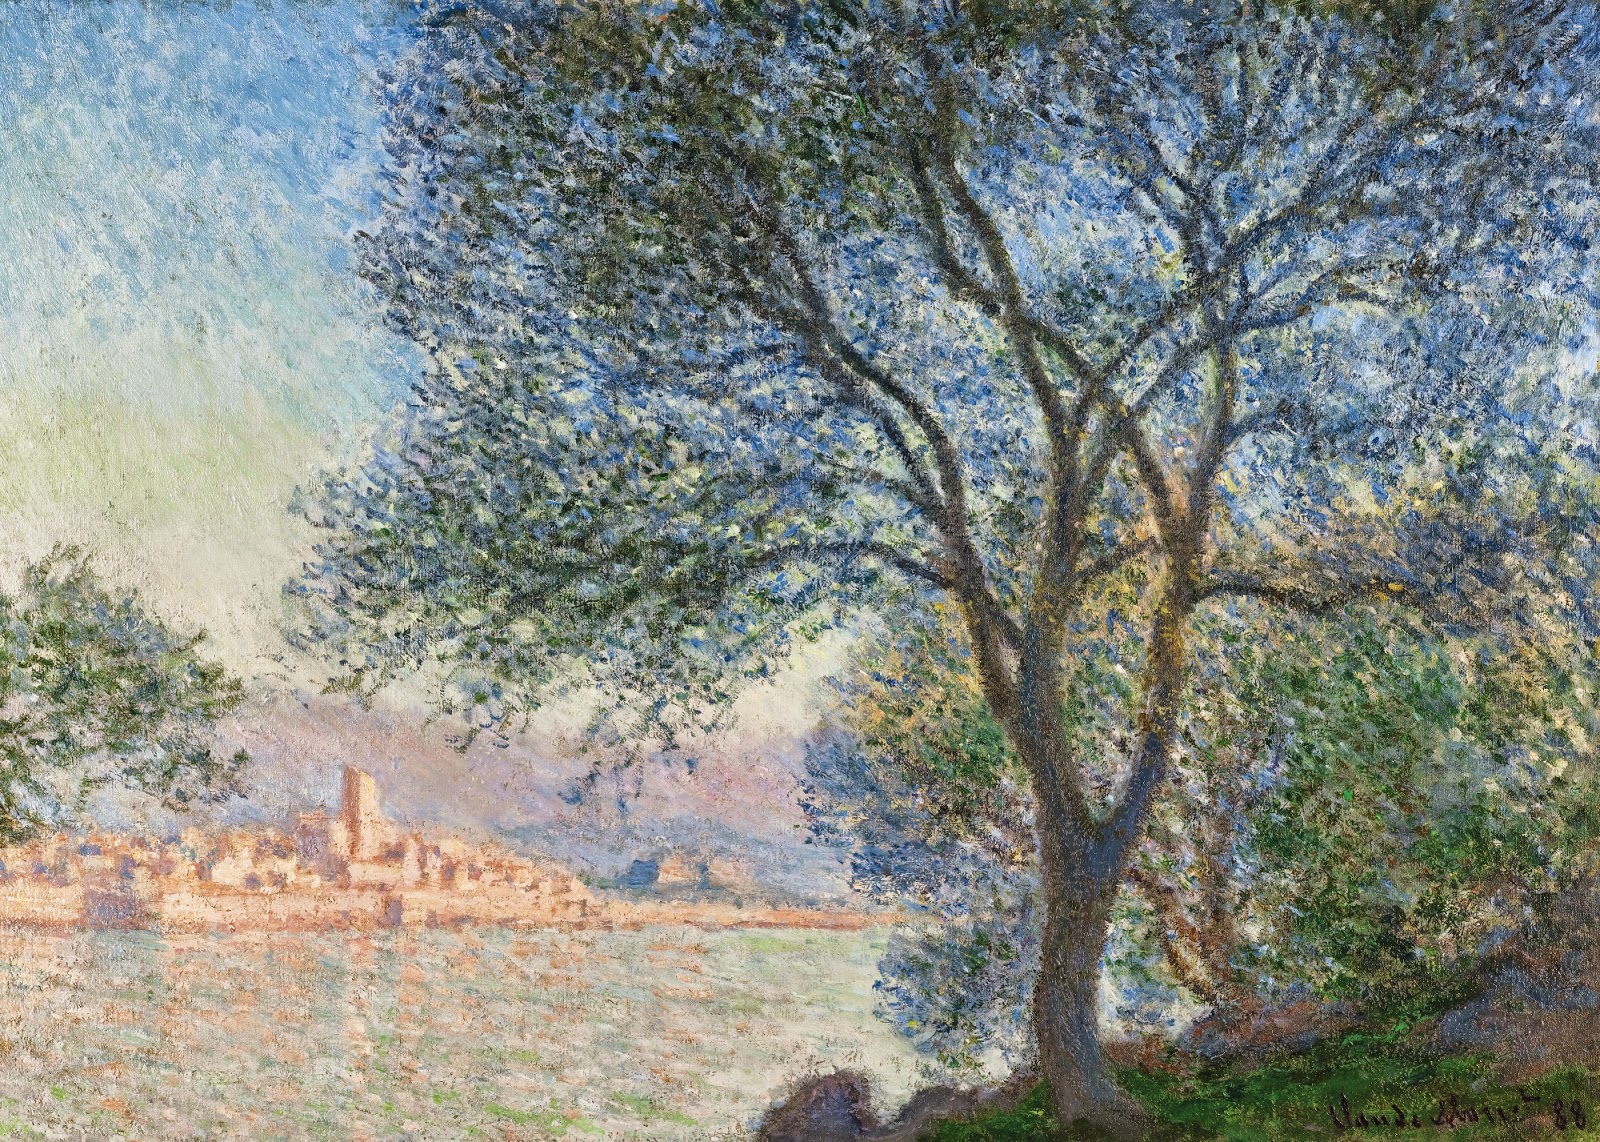 Claude+Monet-1840-1926 (376).jpeg